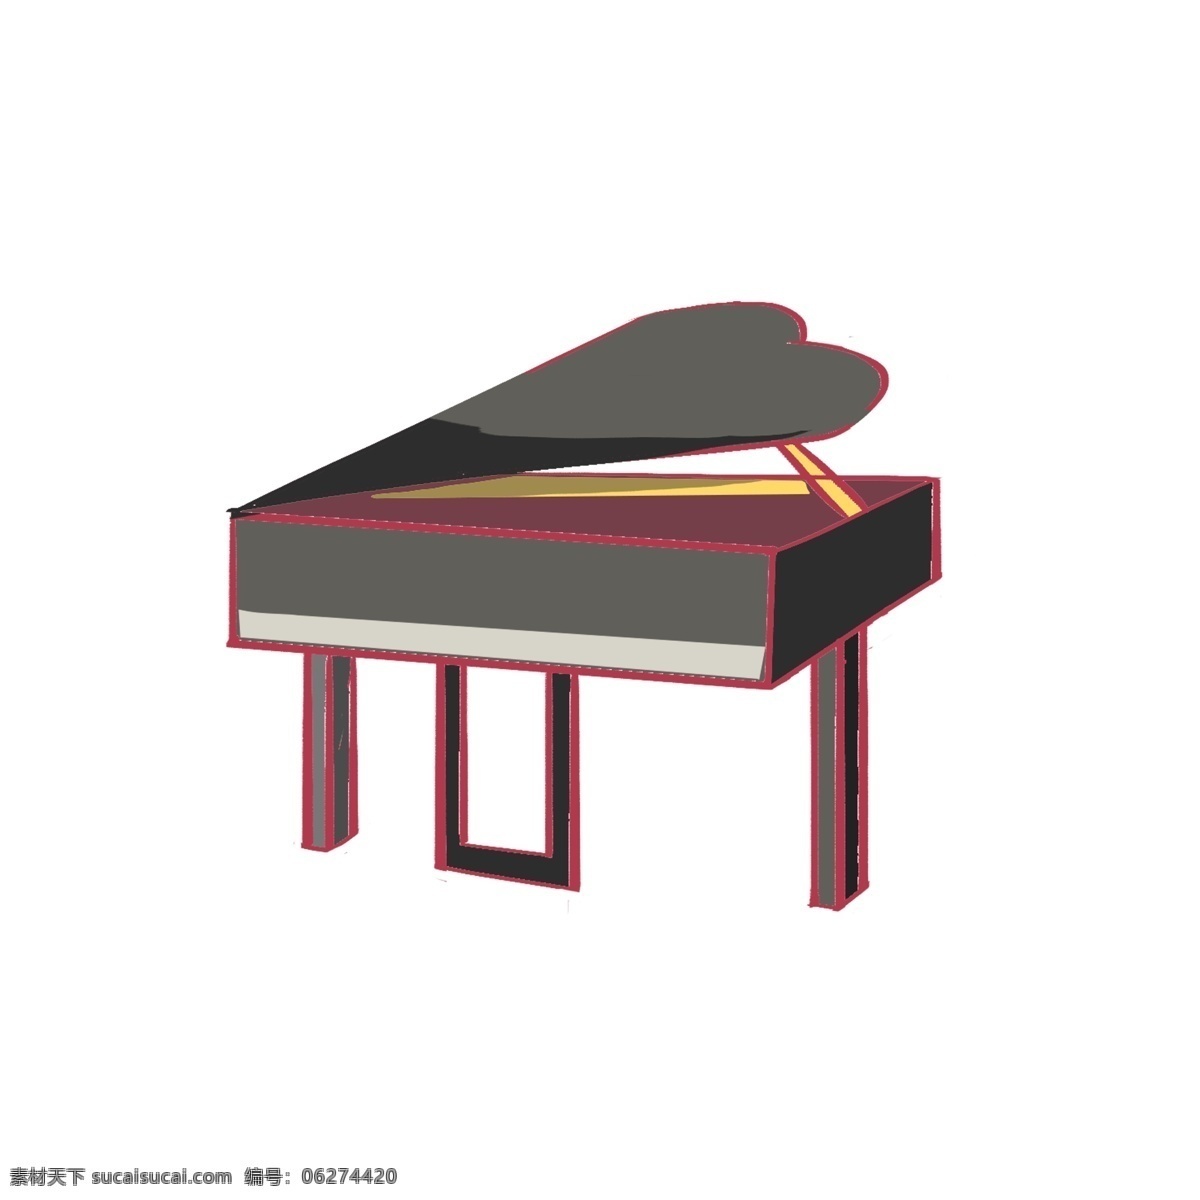 灰色 手绘 线 稿 钢琴 元素 想啊 扁平化 乐器 演奏 商务 矢量图 卡通图标